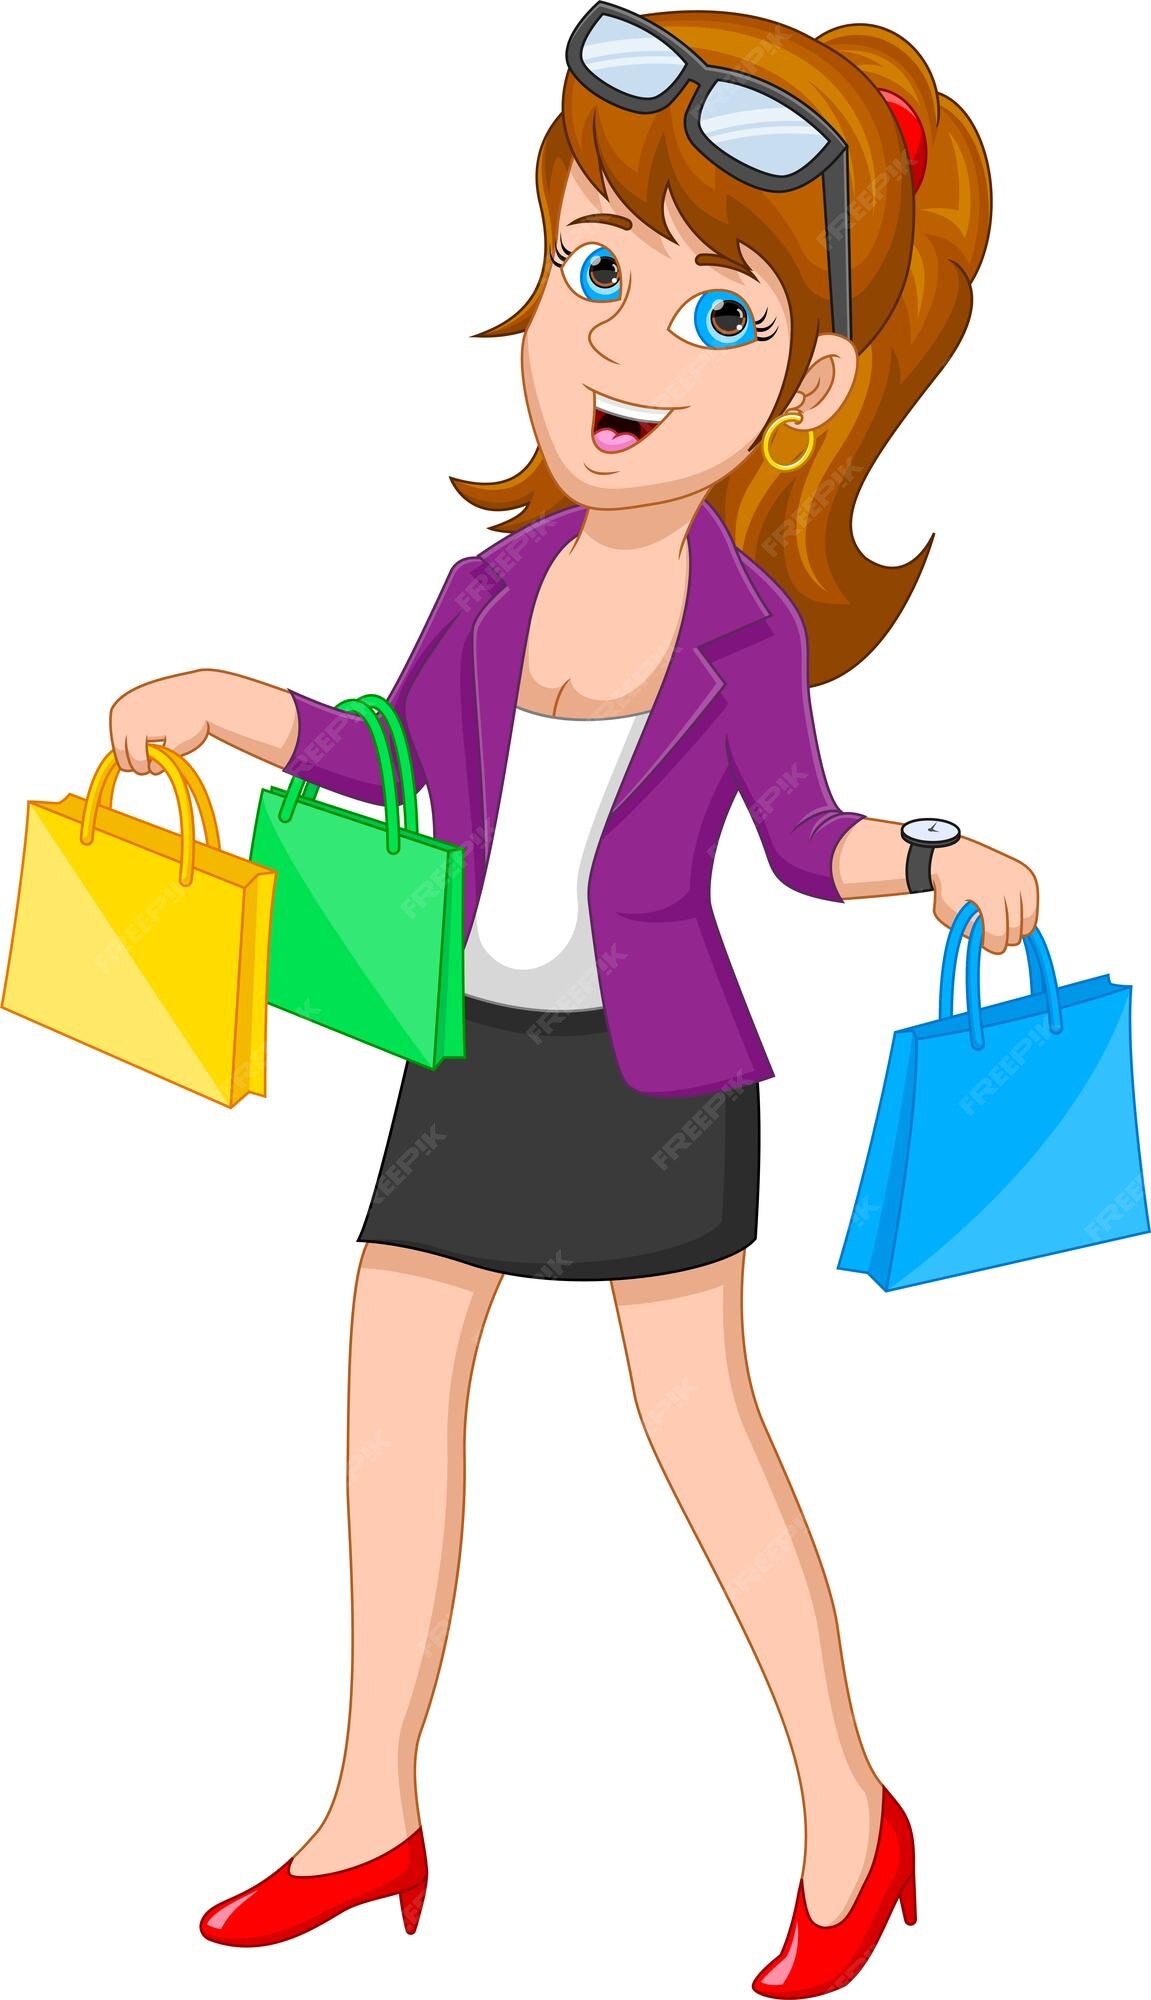 Shopping Girl Cartoon Images - Free Download on Freepik